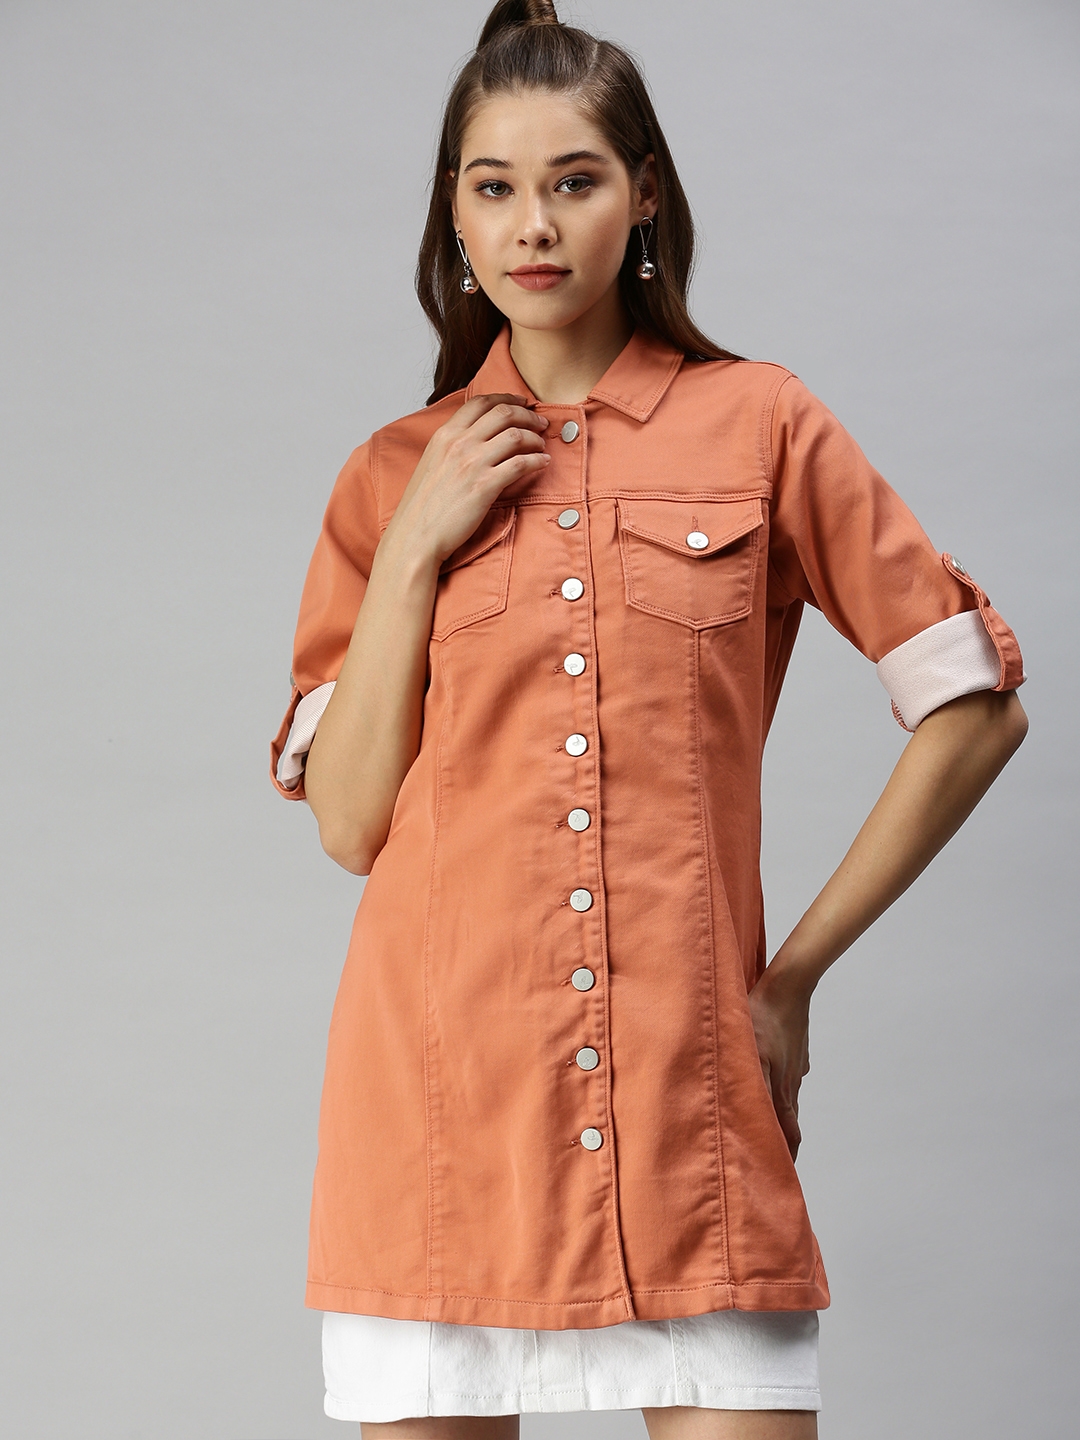 Women's Orange Denim Solid Denim Jackets